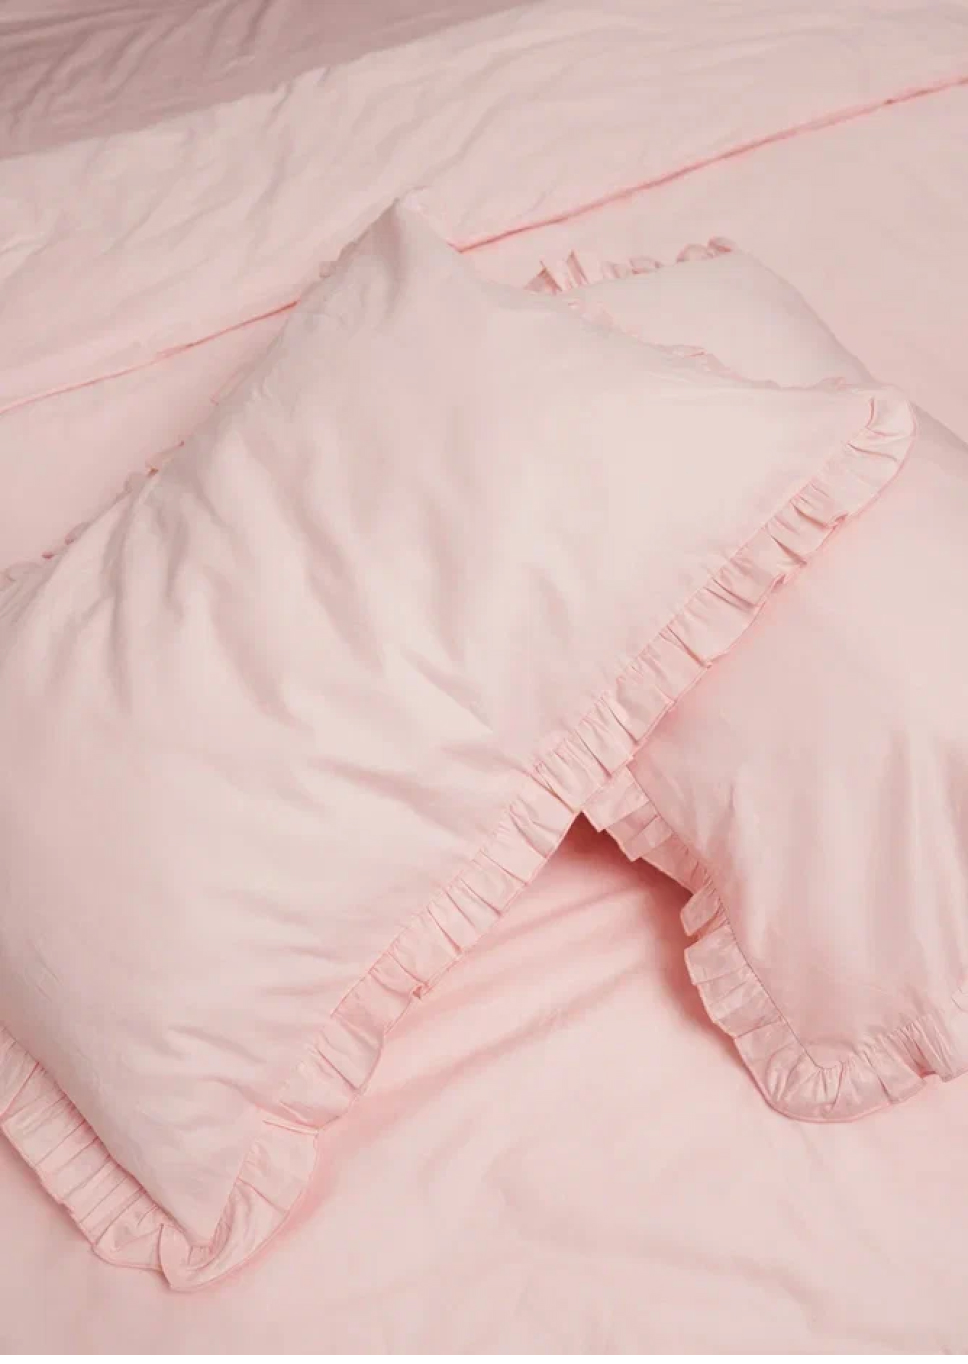 Как создается эстетичная «одежда» для кровати: история проекта NBBC (фото 2)